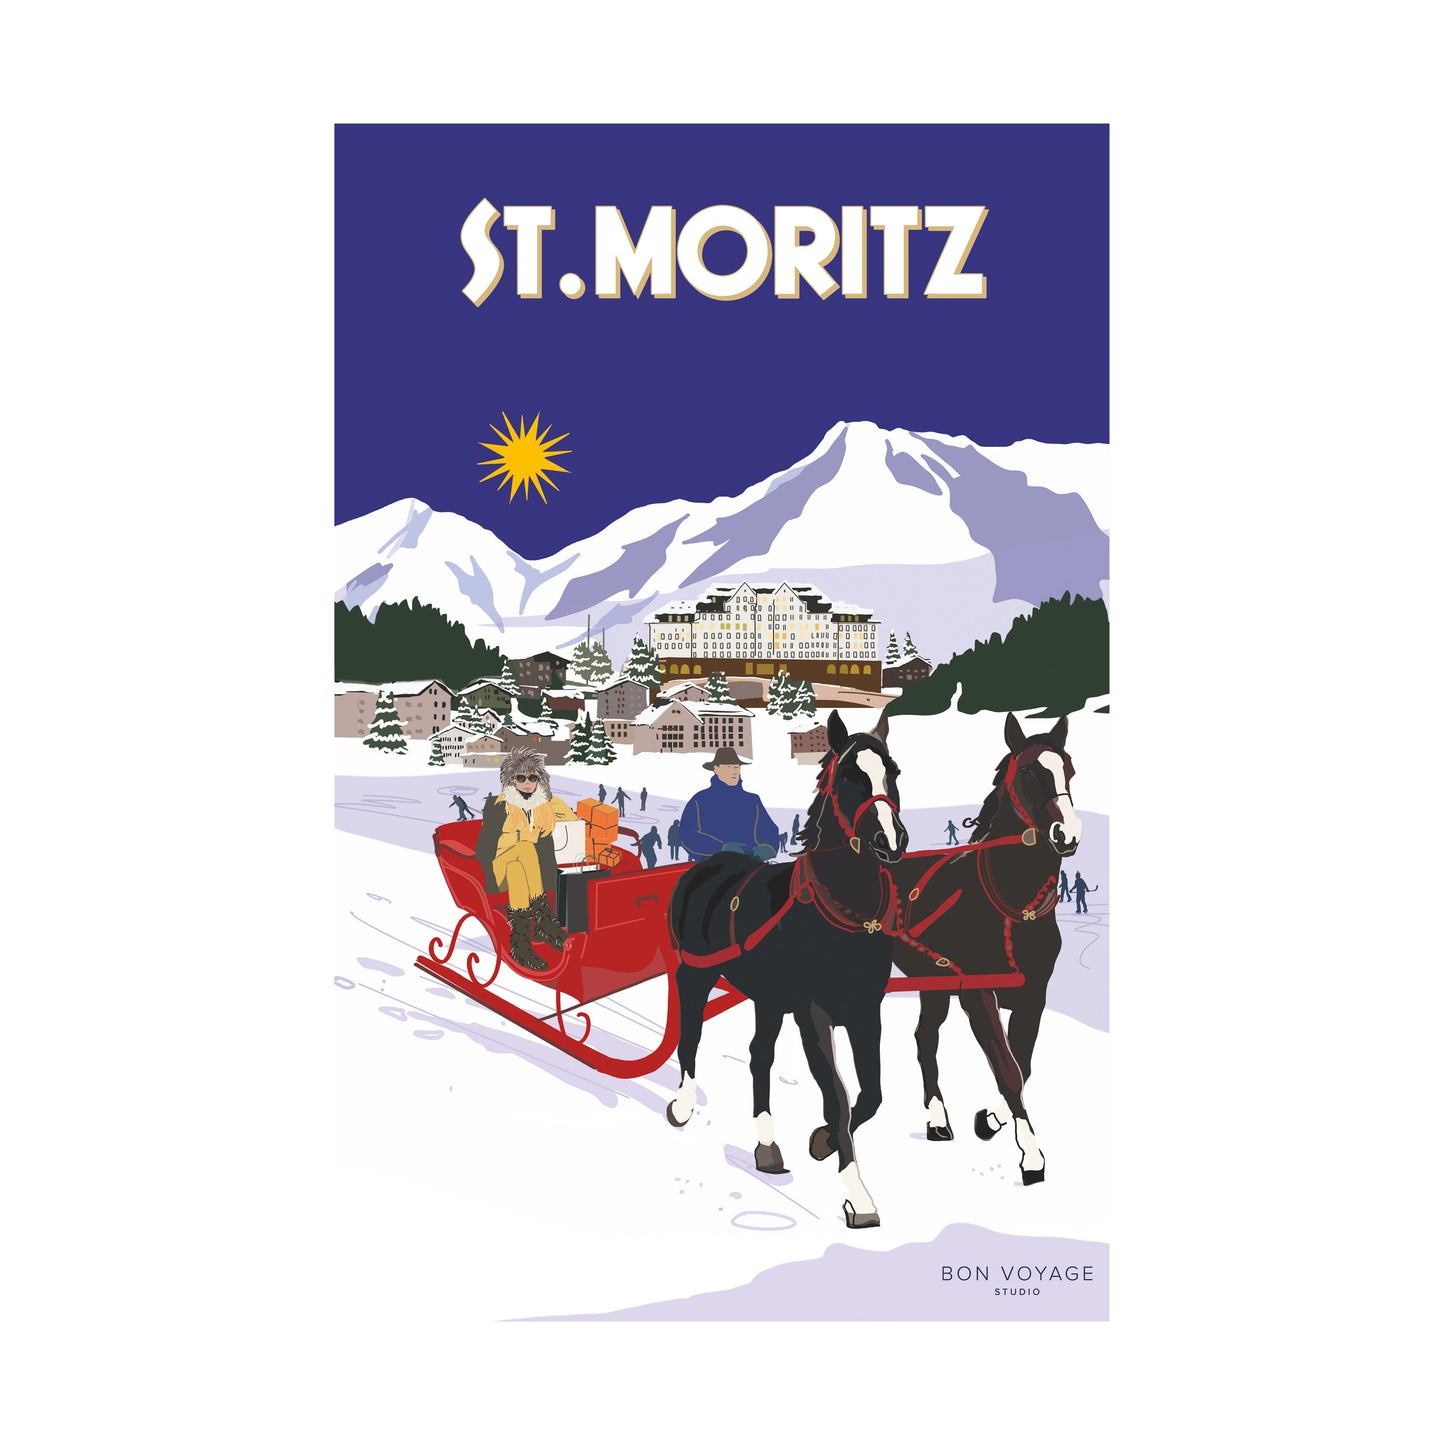 Print only "ST.MORITZ"